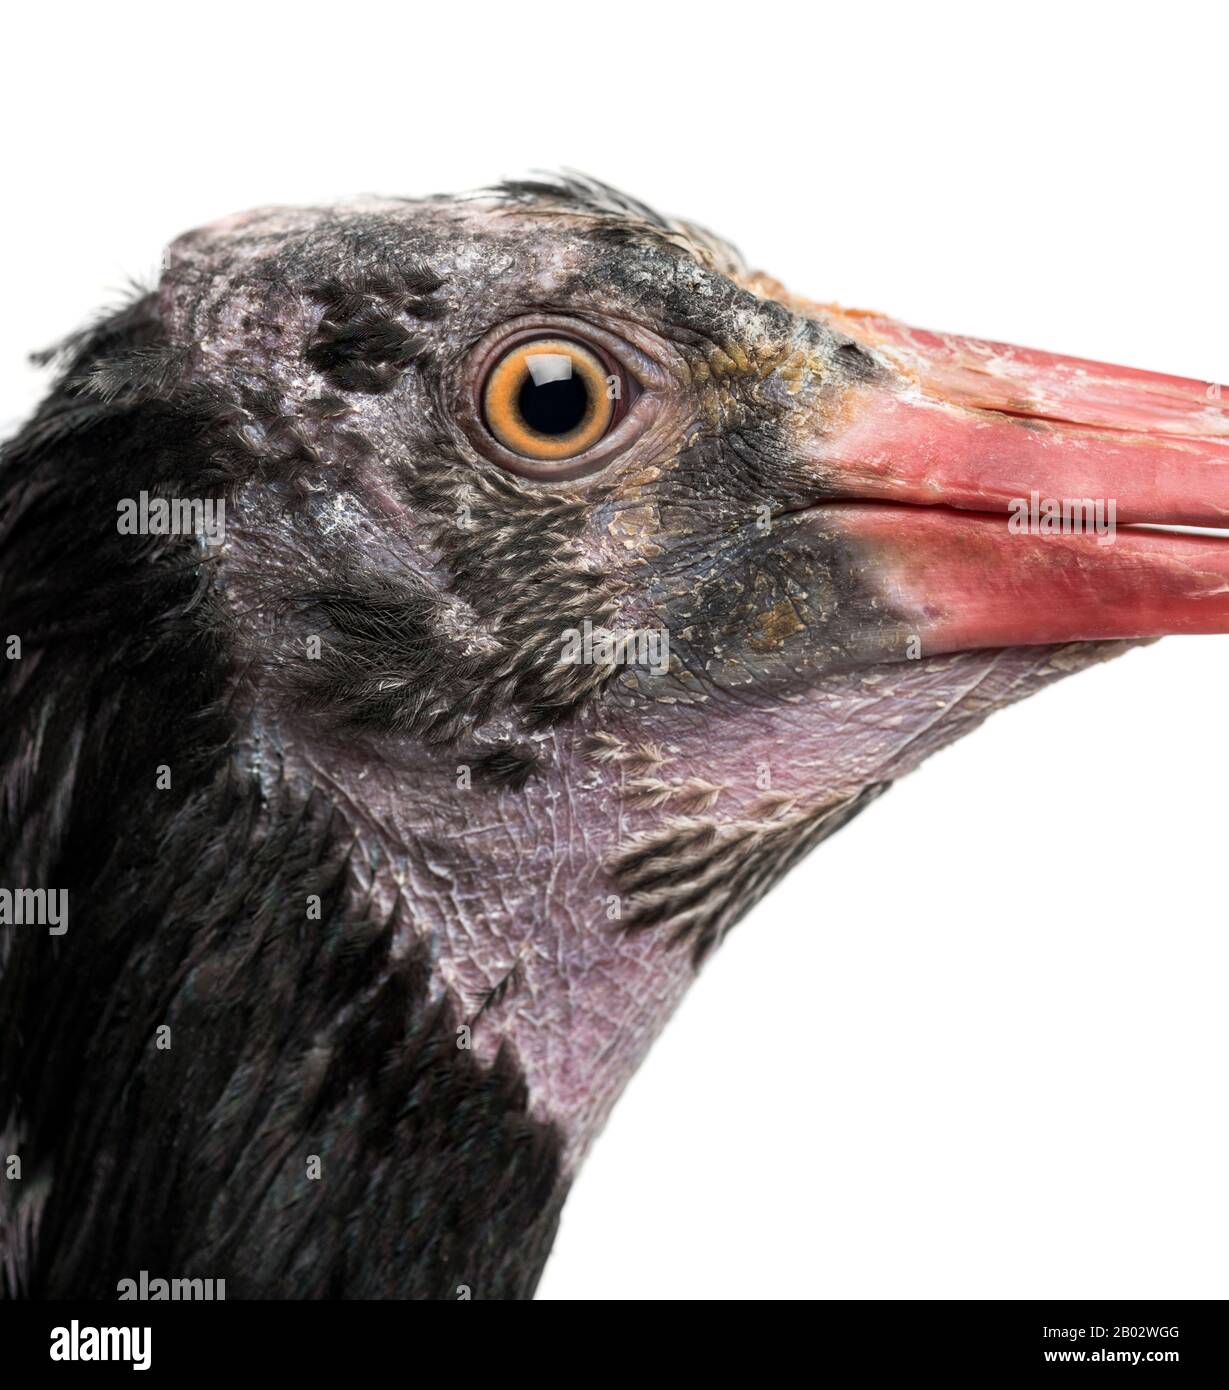 Primo piano del profilo di un Ibis Bald settentrionale, Geronticus eremita, isolato su bianco Foto Stock